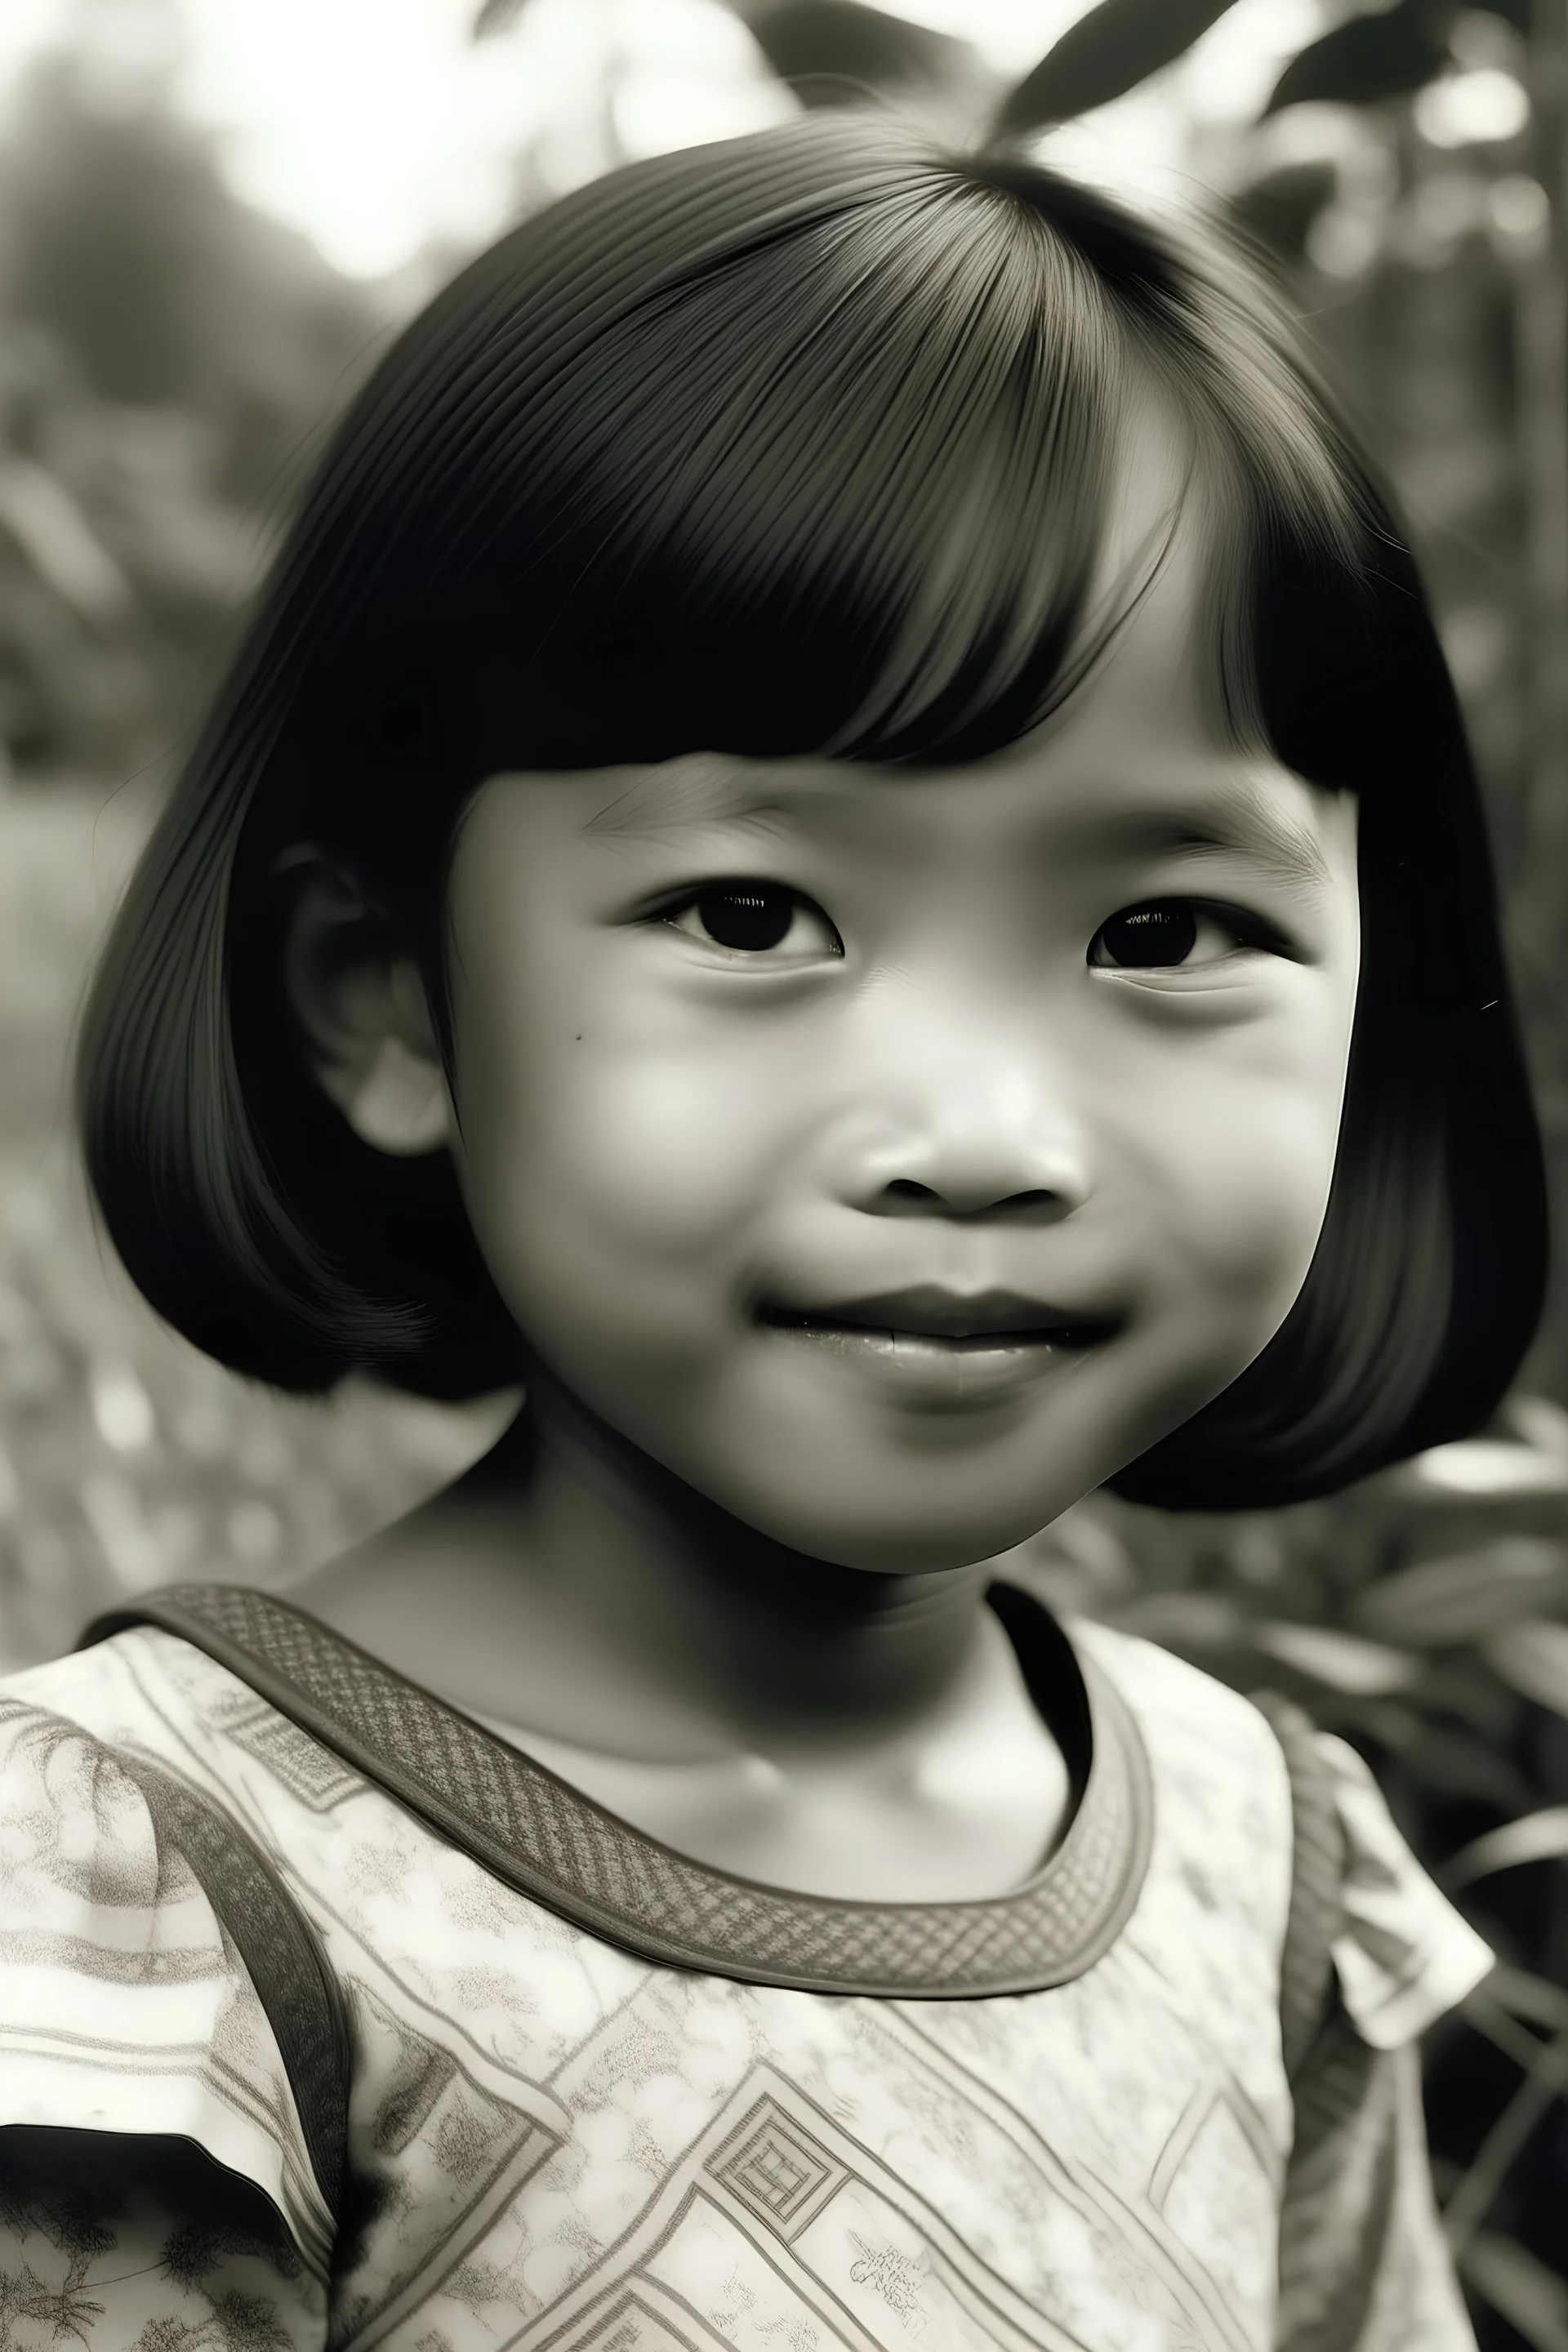 Foto masa kecil winanti sekar utami, asal Salatiga. Jawa Tengah. Indonesia